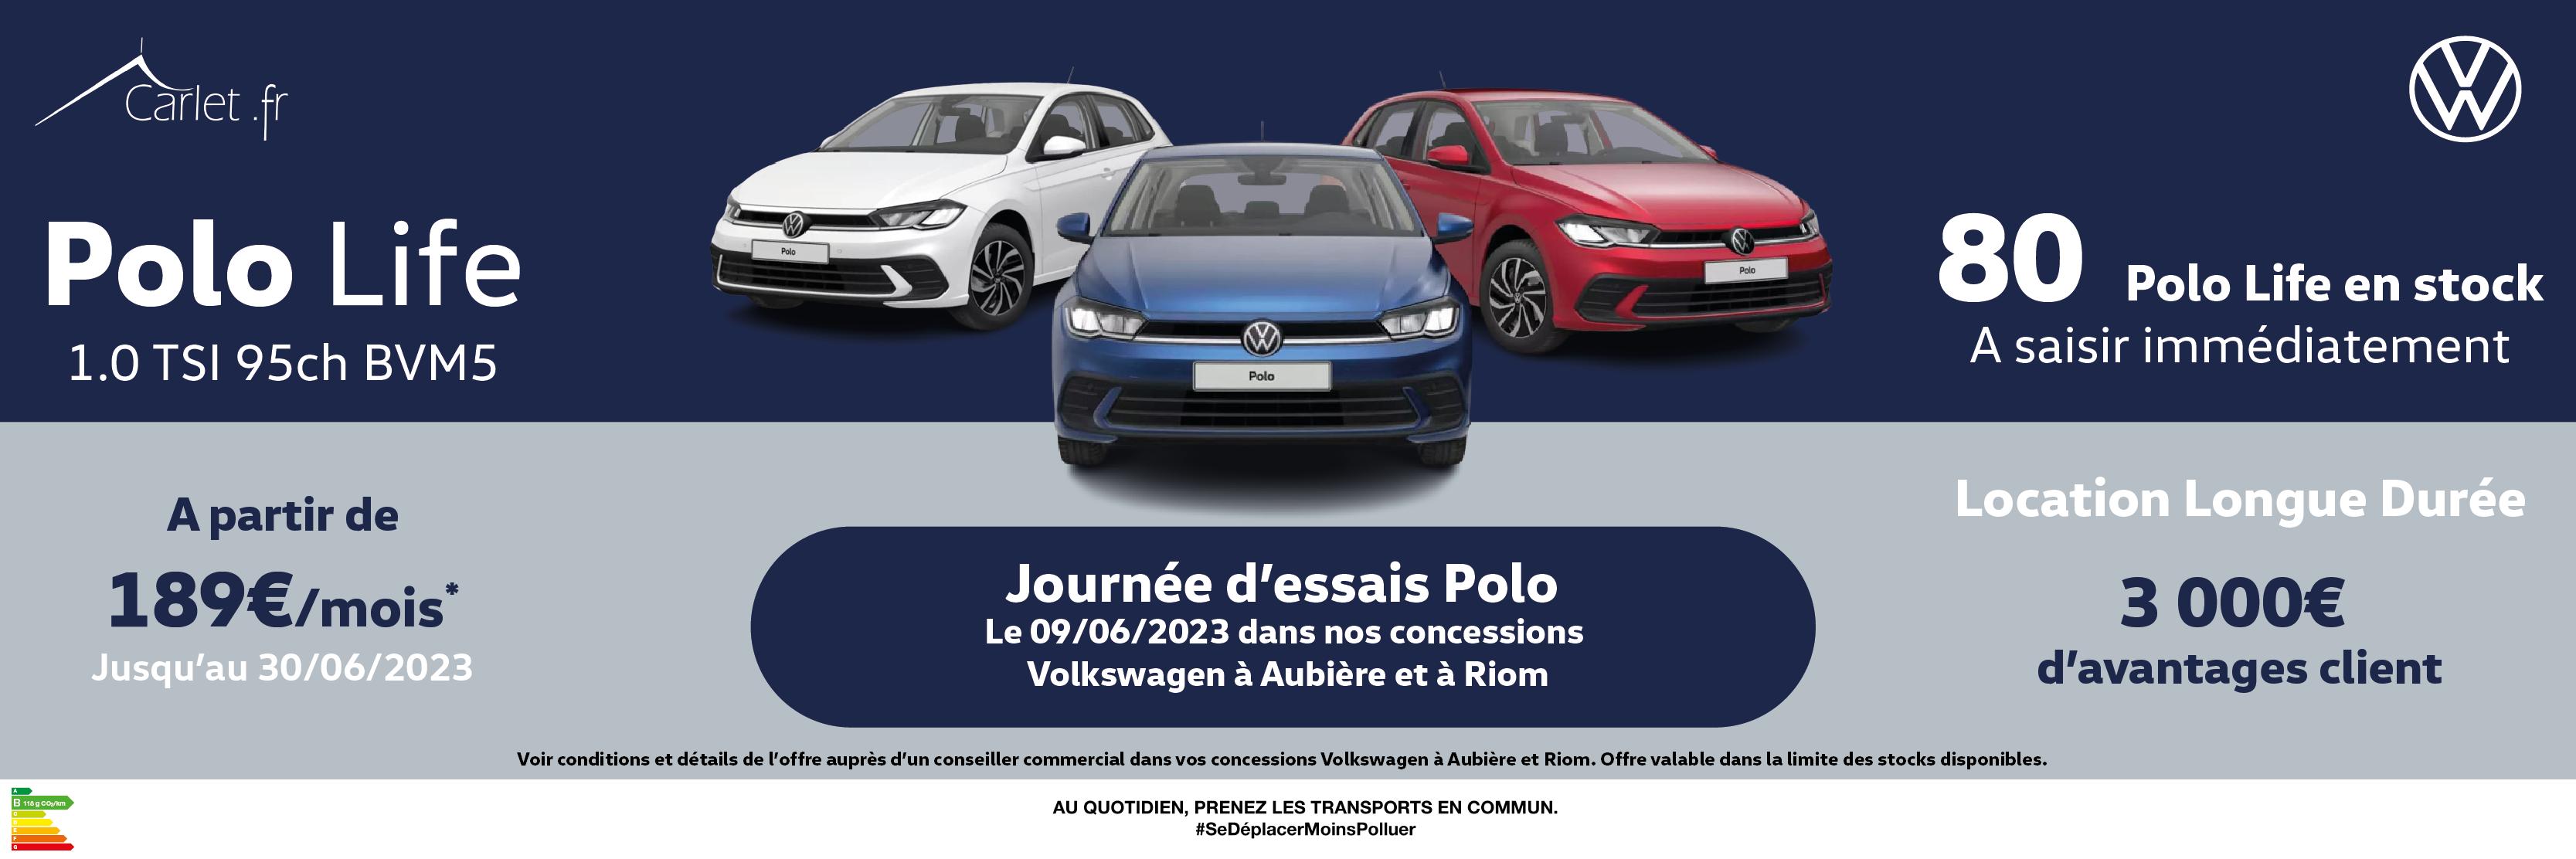 JACQUES CARLET - VOLKSWAGEN AUBIERE - Journée d'essais Polo dans vos concessions Volkswagen à Aubière et à Riom ! 